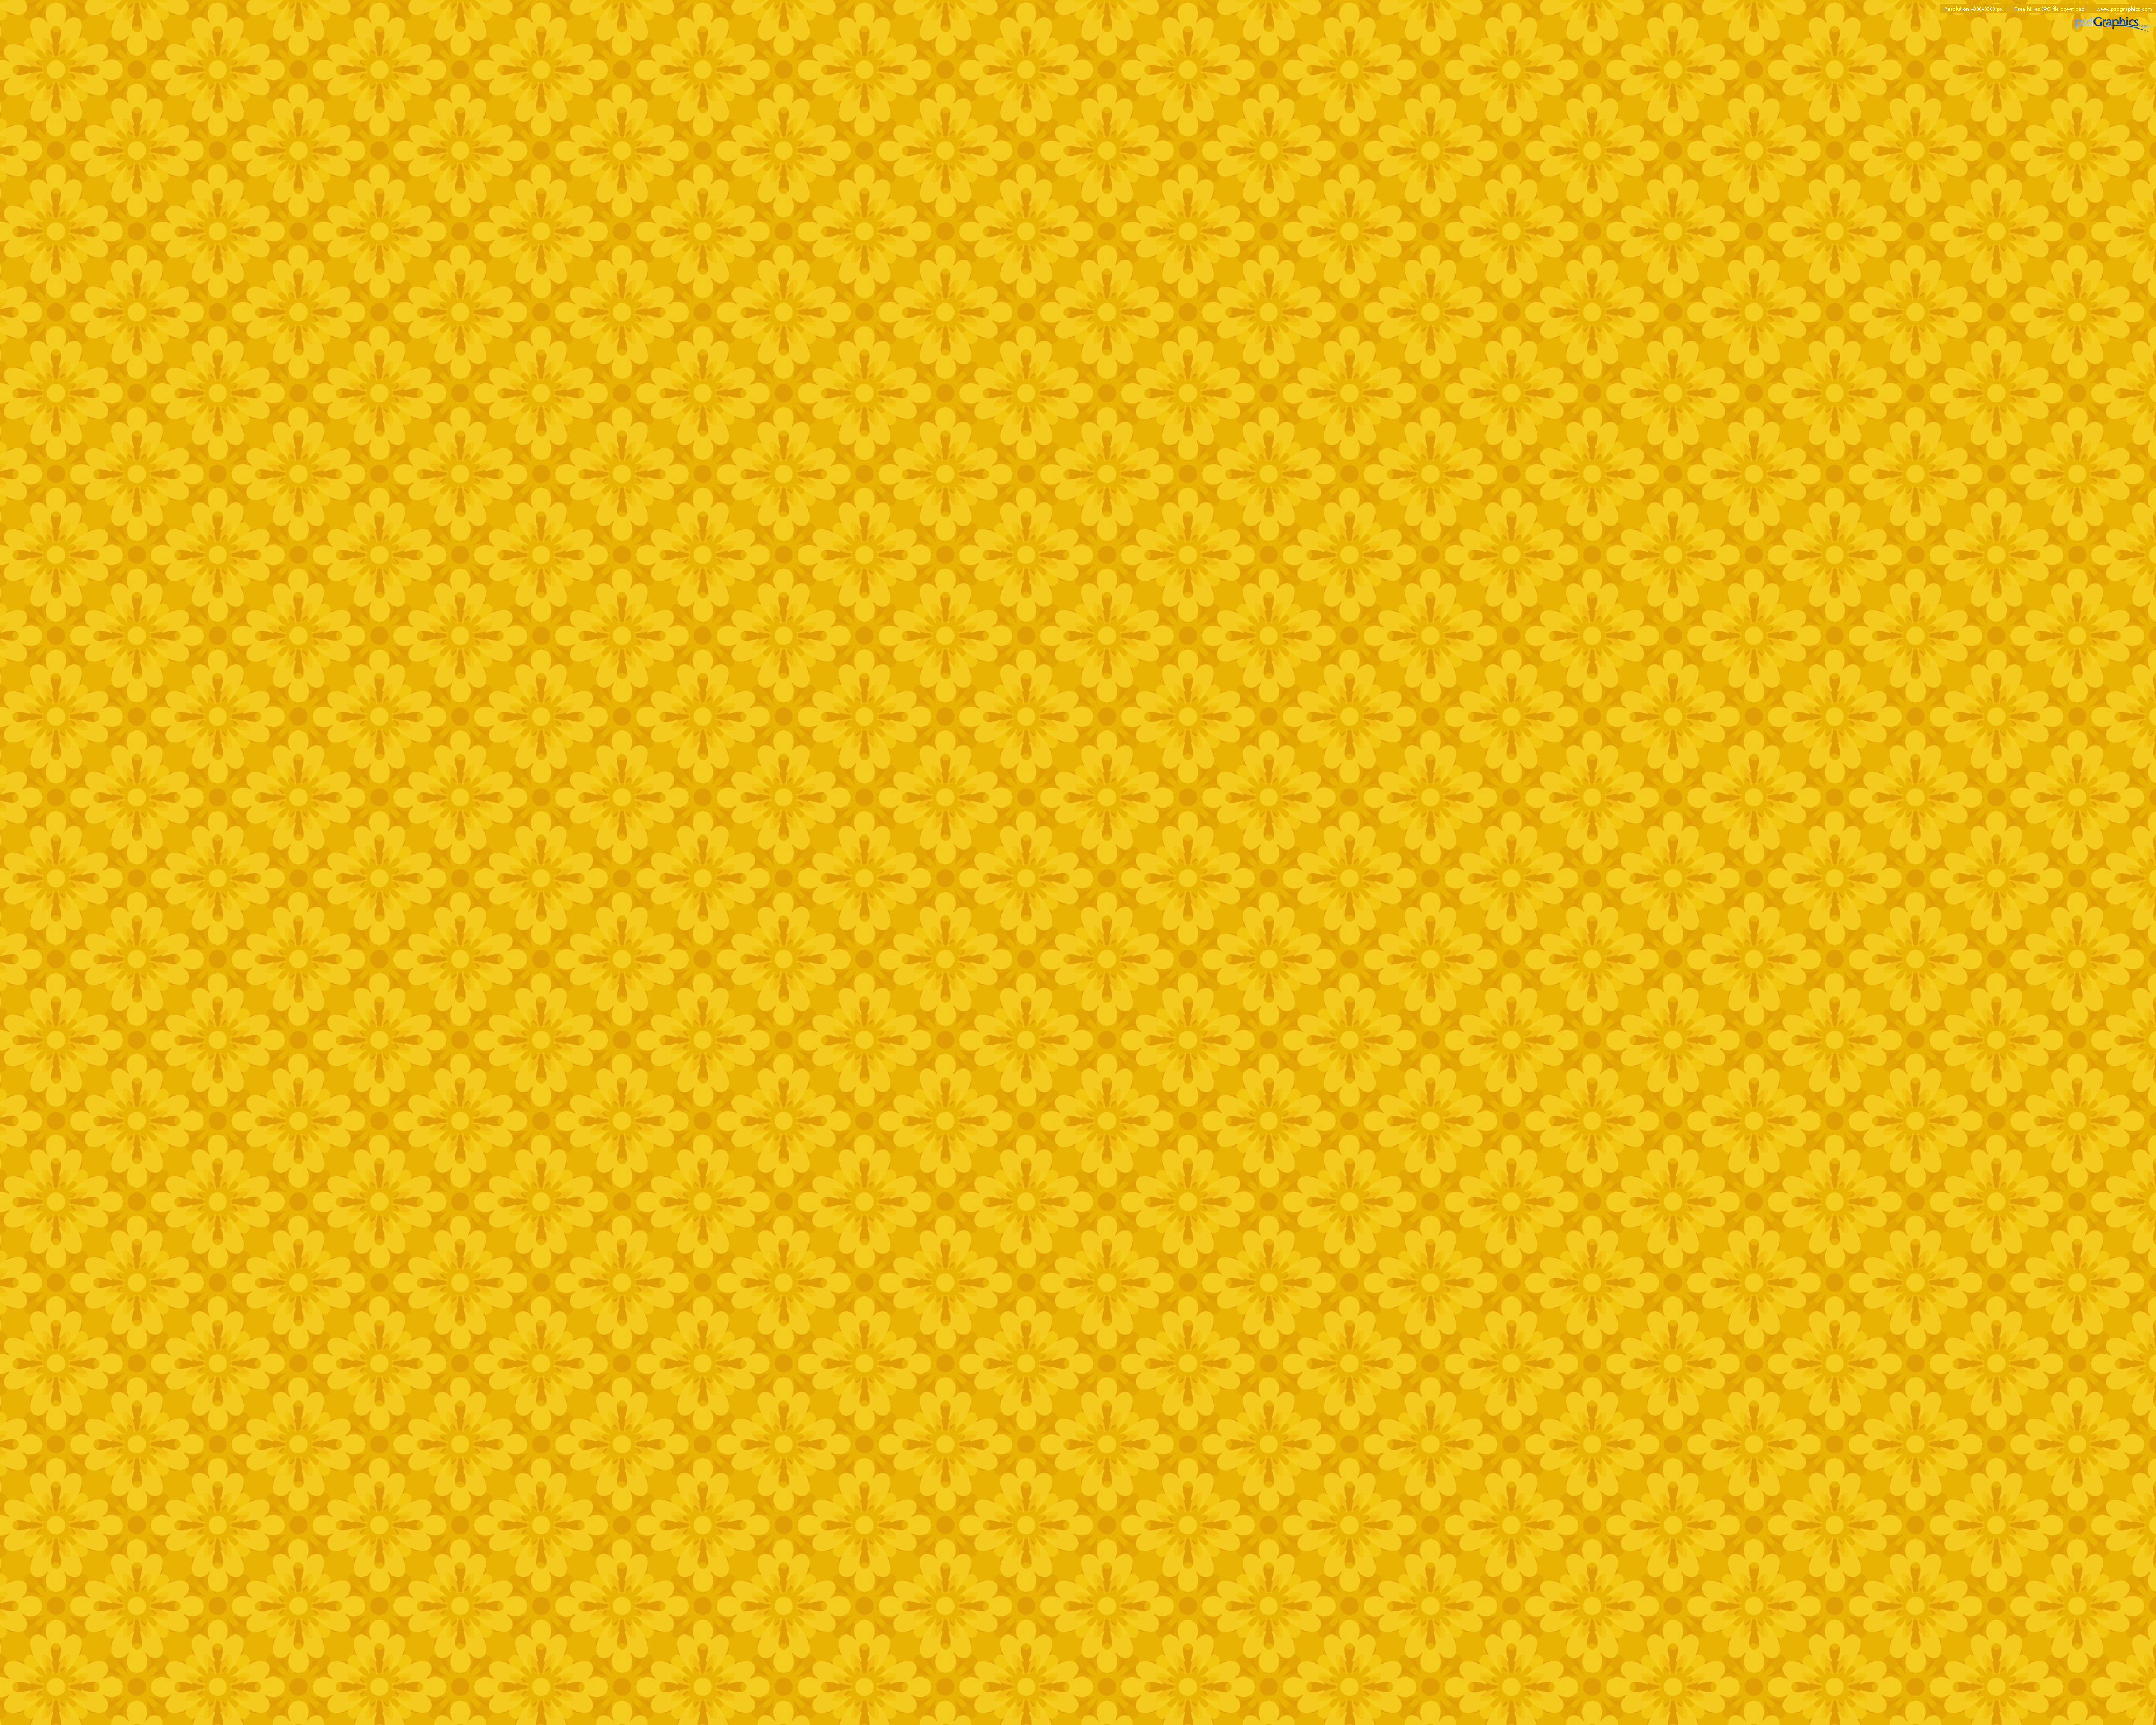 44+] Yellow Patterned Wallpaper - WallpaperSafari